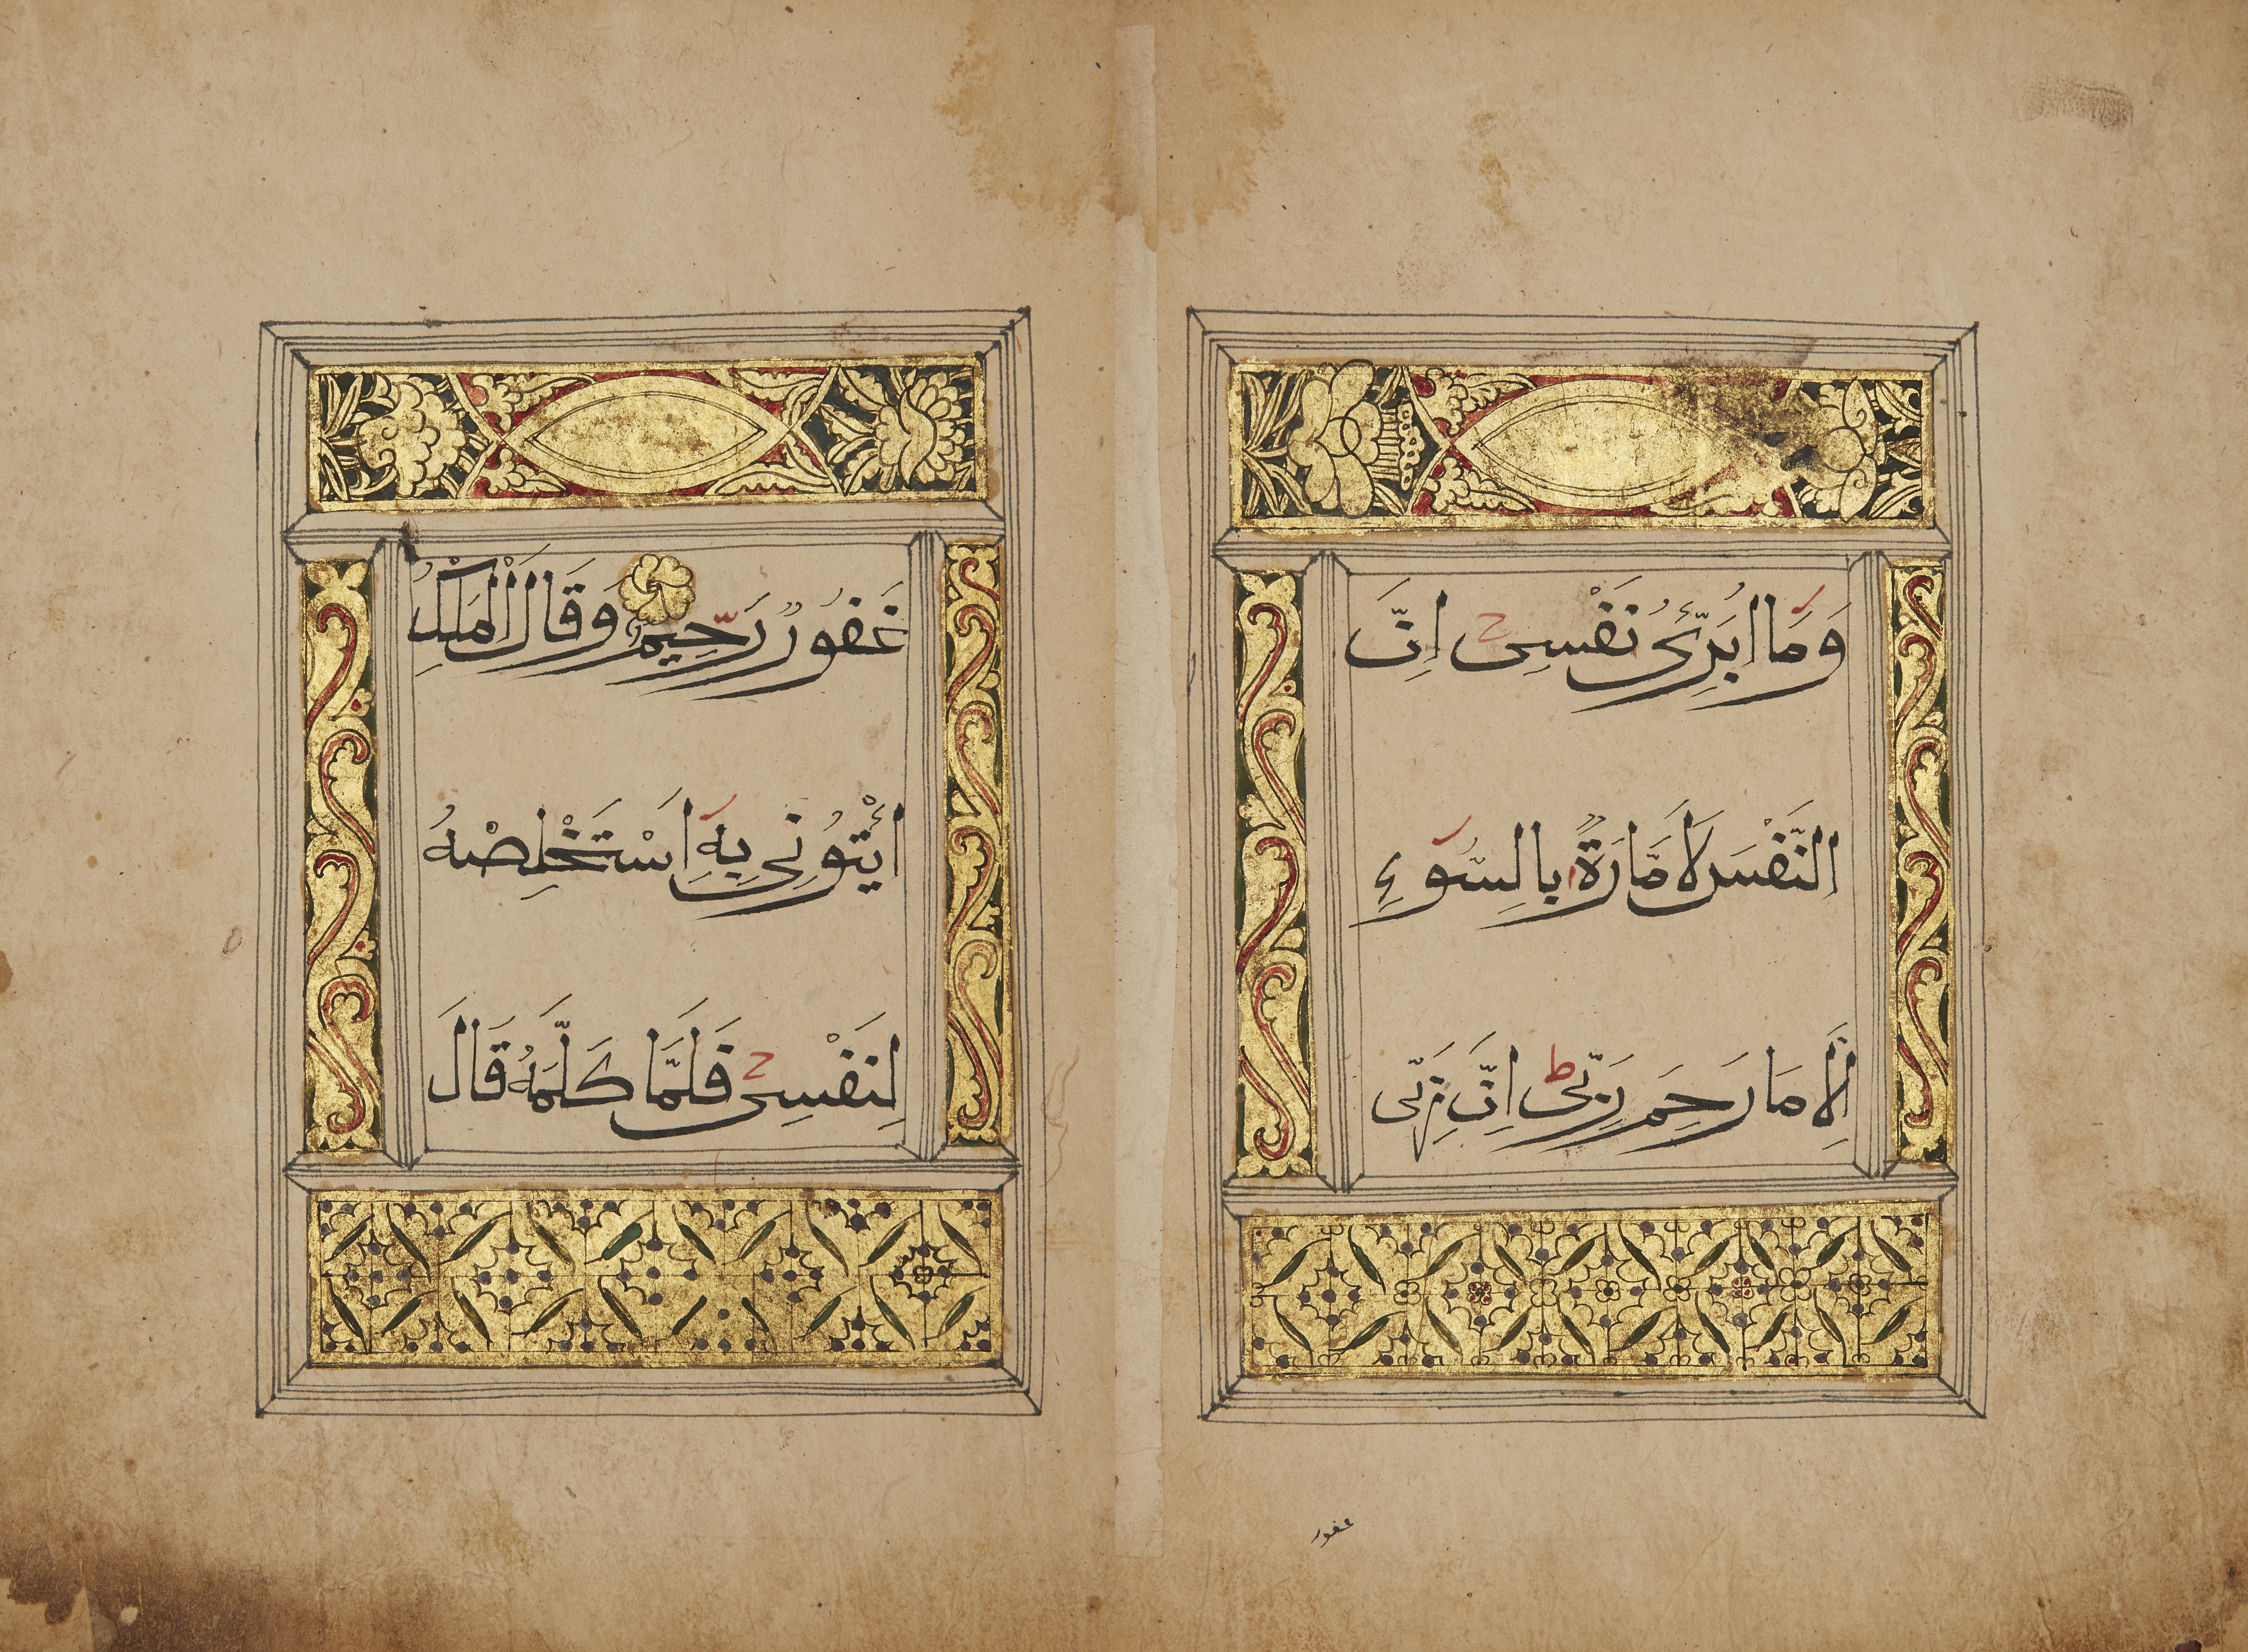 Qur'an juz XIII (وَمَا أُبَرِّئُ ) China, 19th century Arabic manuscript on paper, 46ff., 2fl.,...